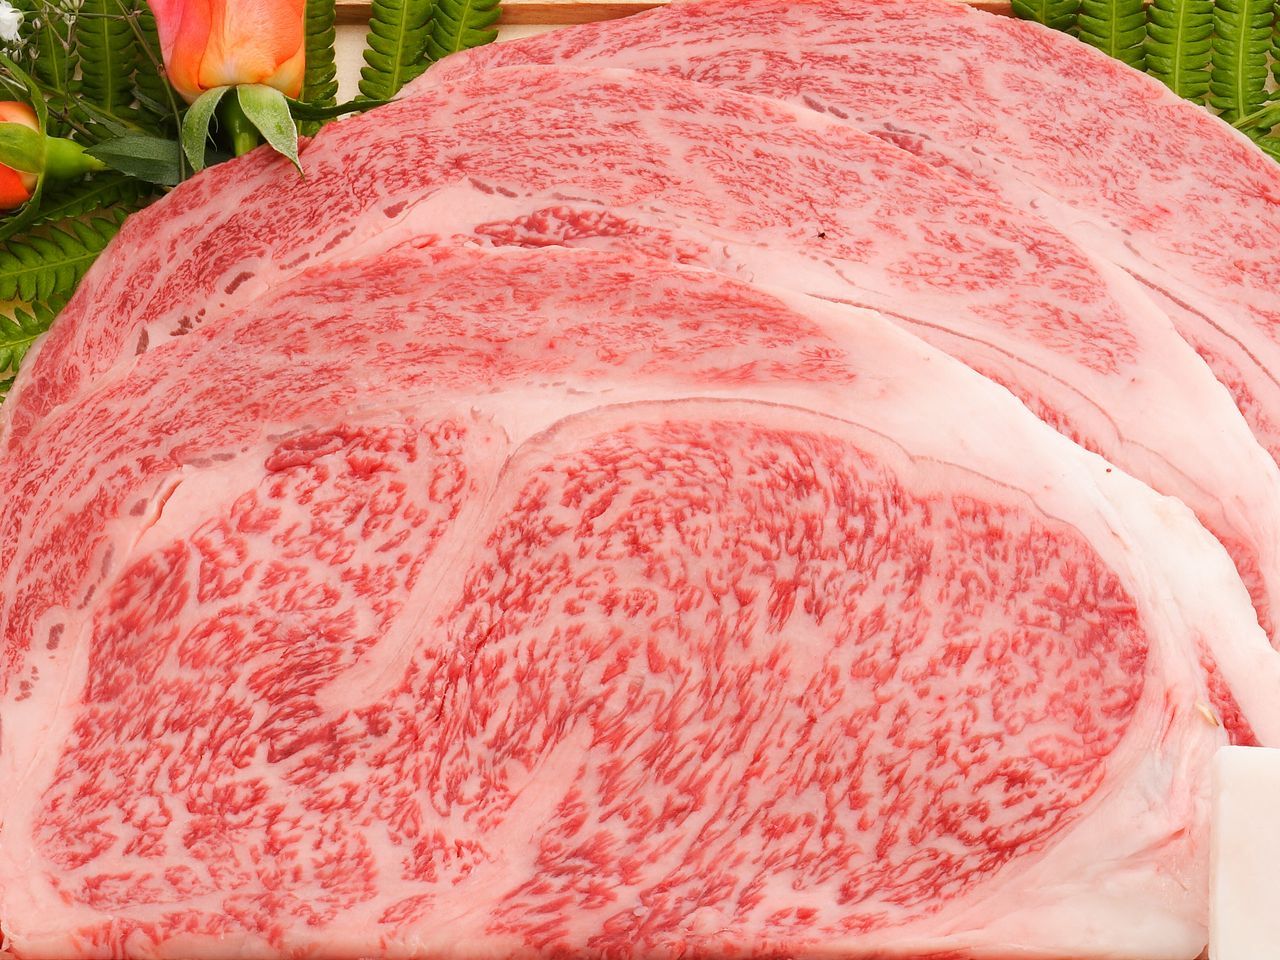 米沢牛 特上ロース ( リブロース ) 焼肉用 / 甘みを感じられる霜降りの最高級牛肉です画像